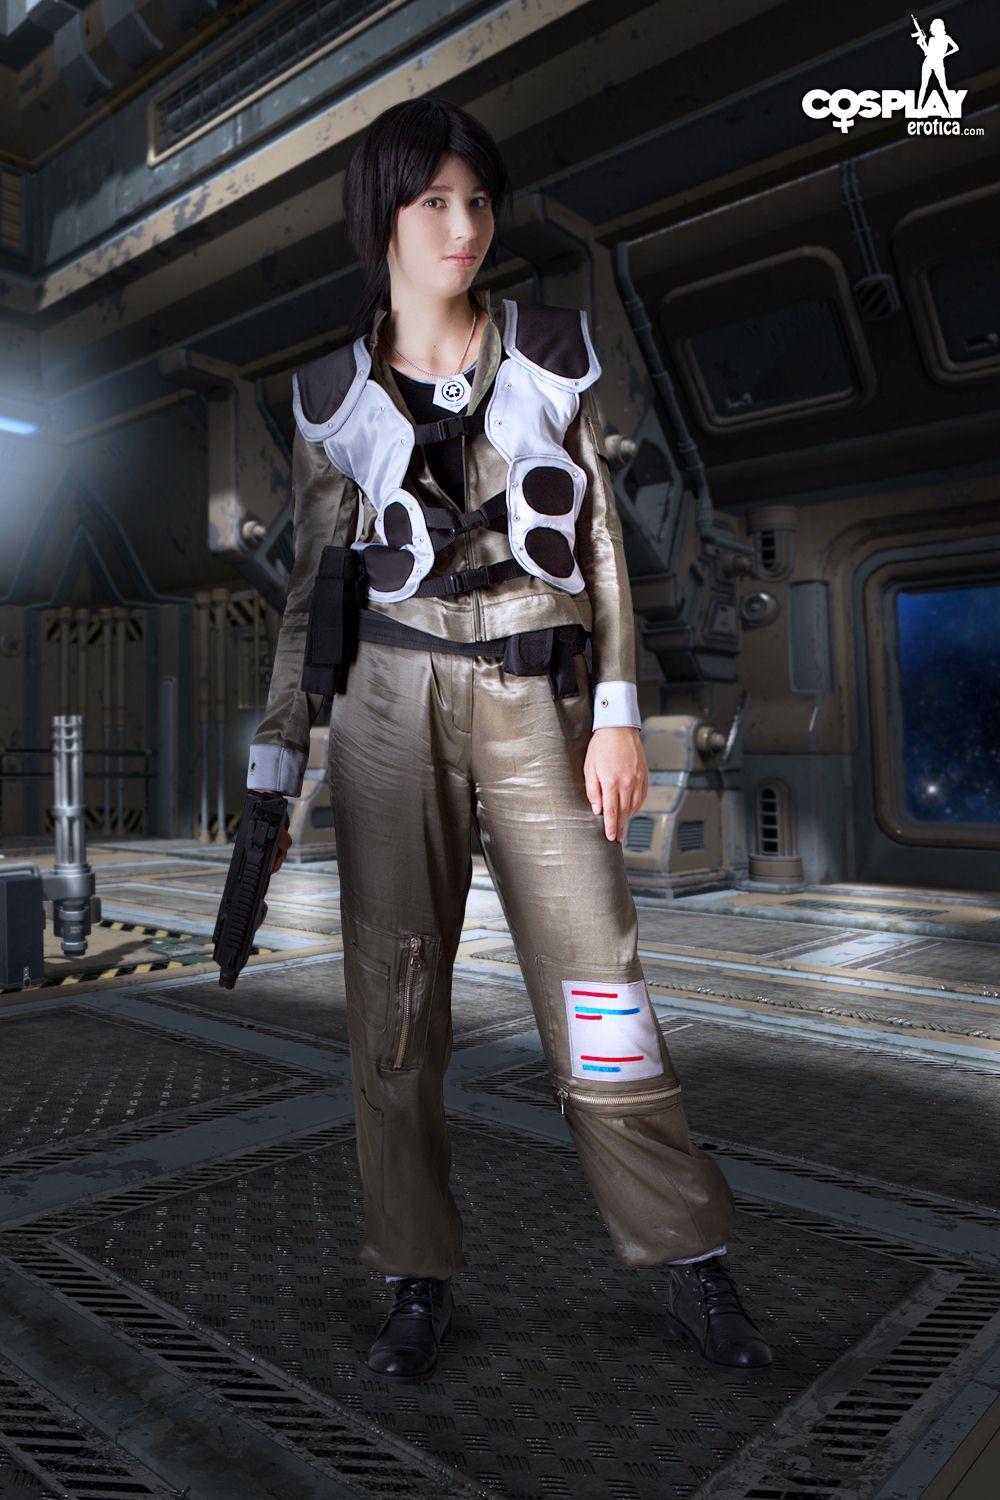 Immagini di stacy cosplayer caldo vestito per dovere su battlestar galactica
 #60298178